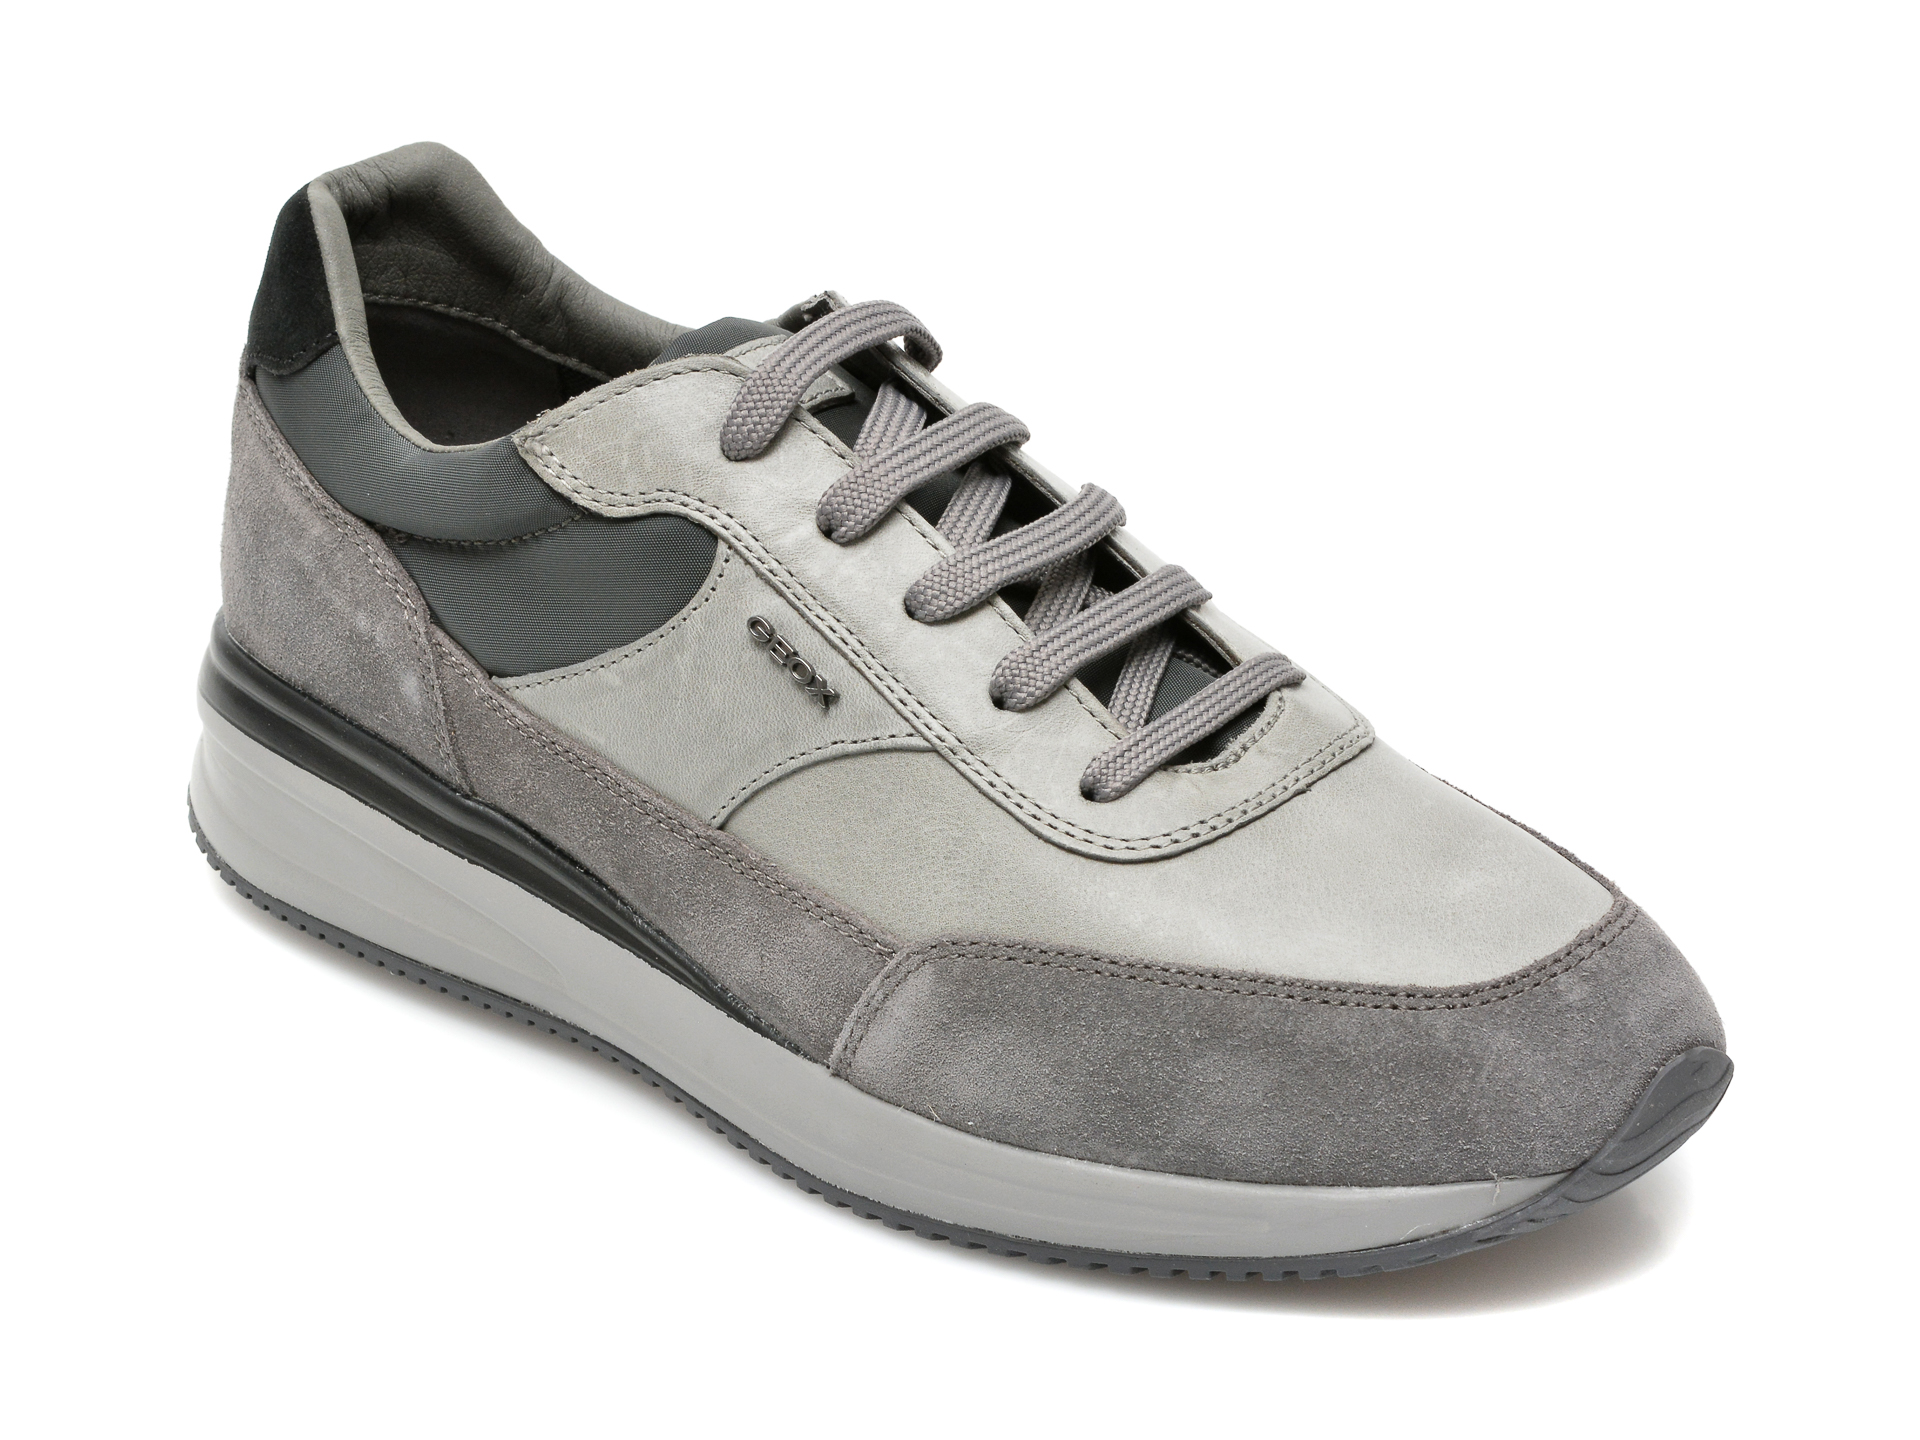 Pantofi GEOX gri, U150GA, din material textil si piele naturala Geox imagine reduceri